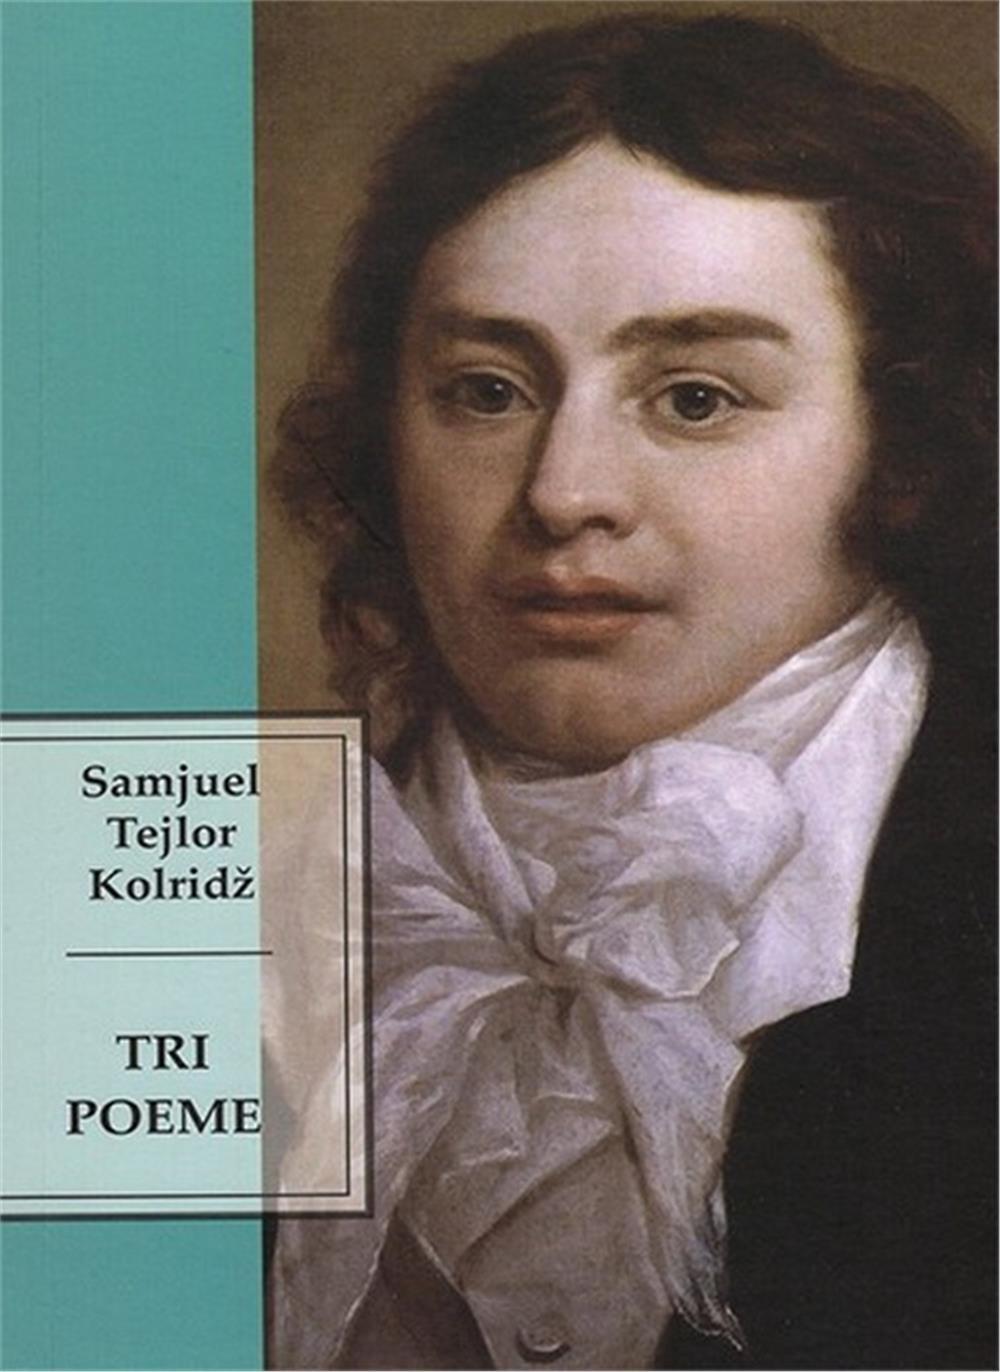 Tri poeme - Samjuel Tejlor Kolridž